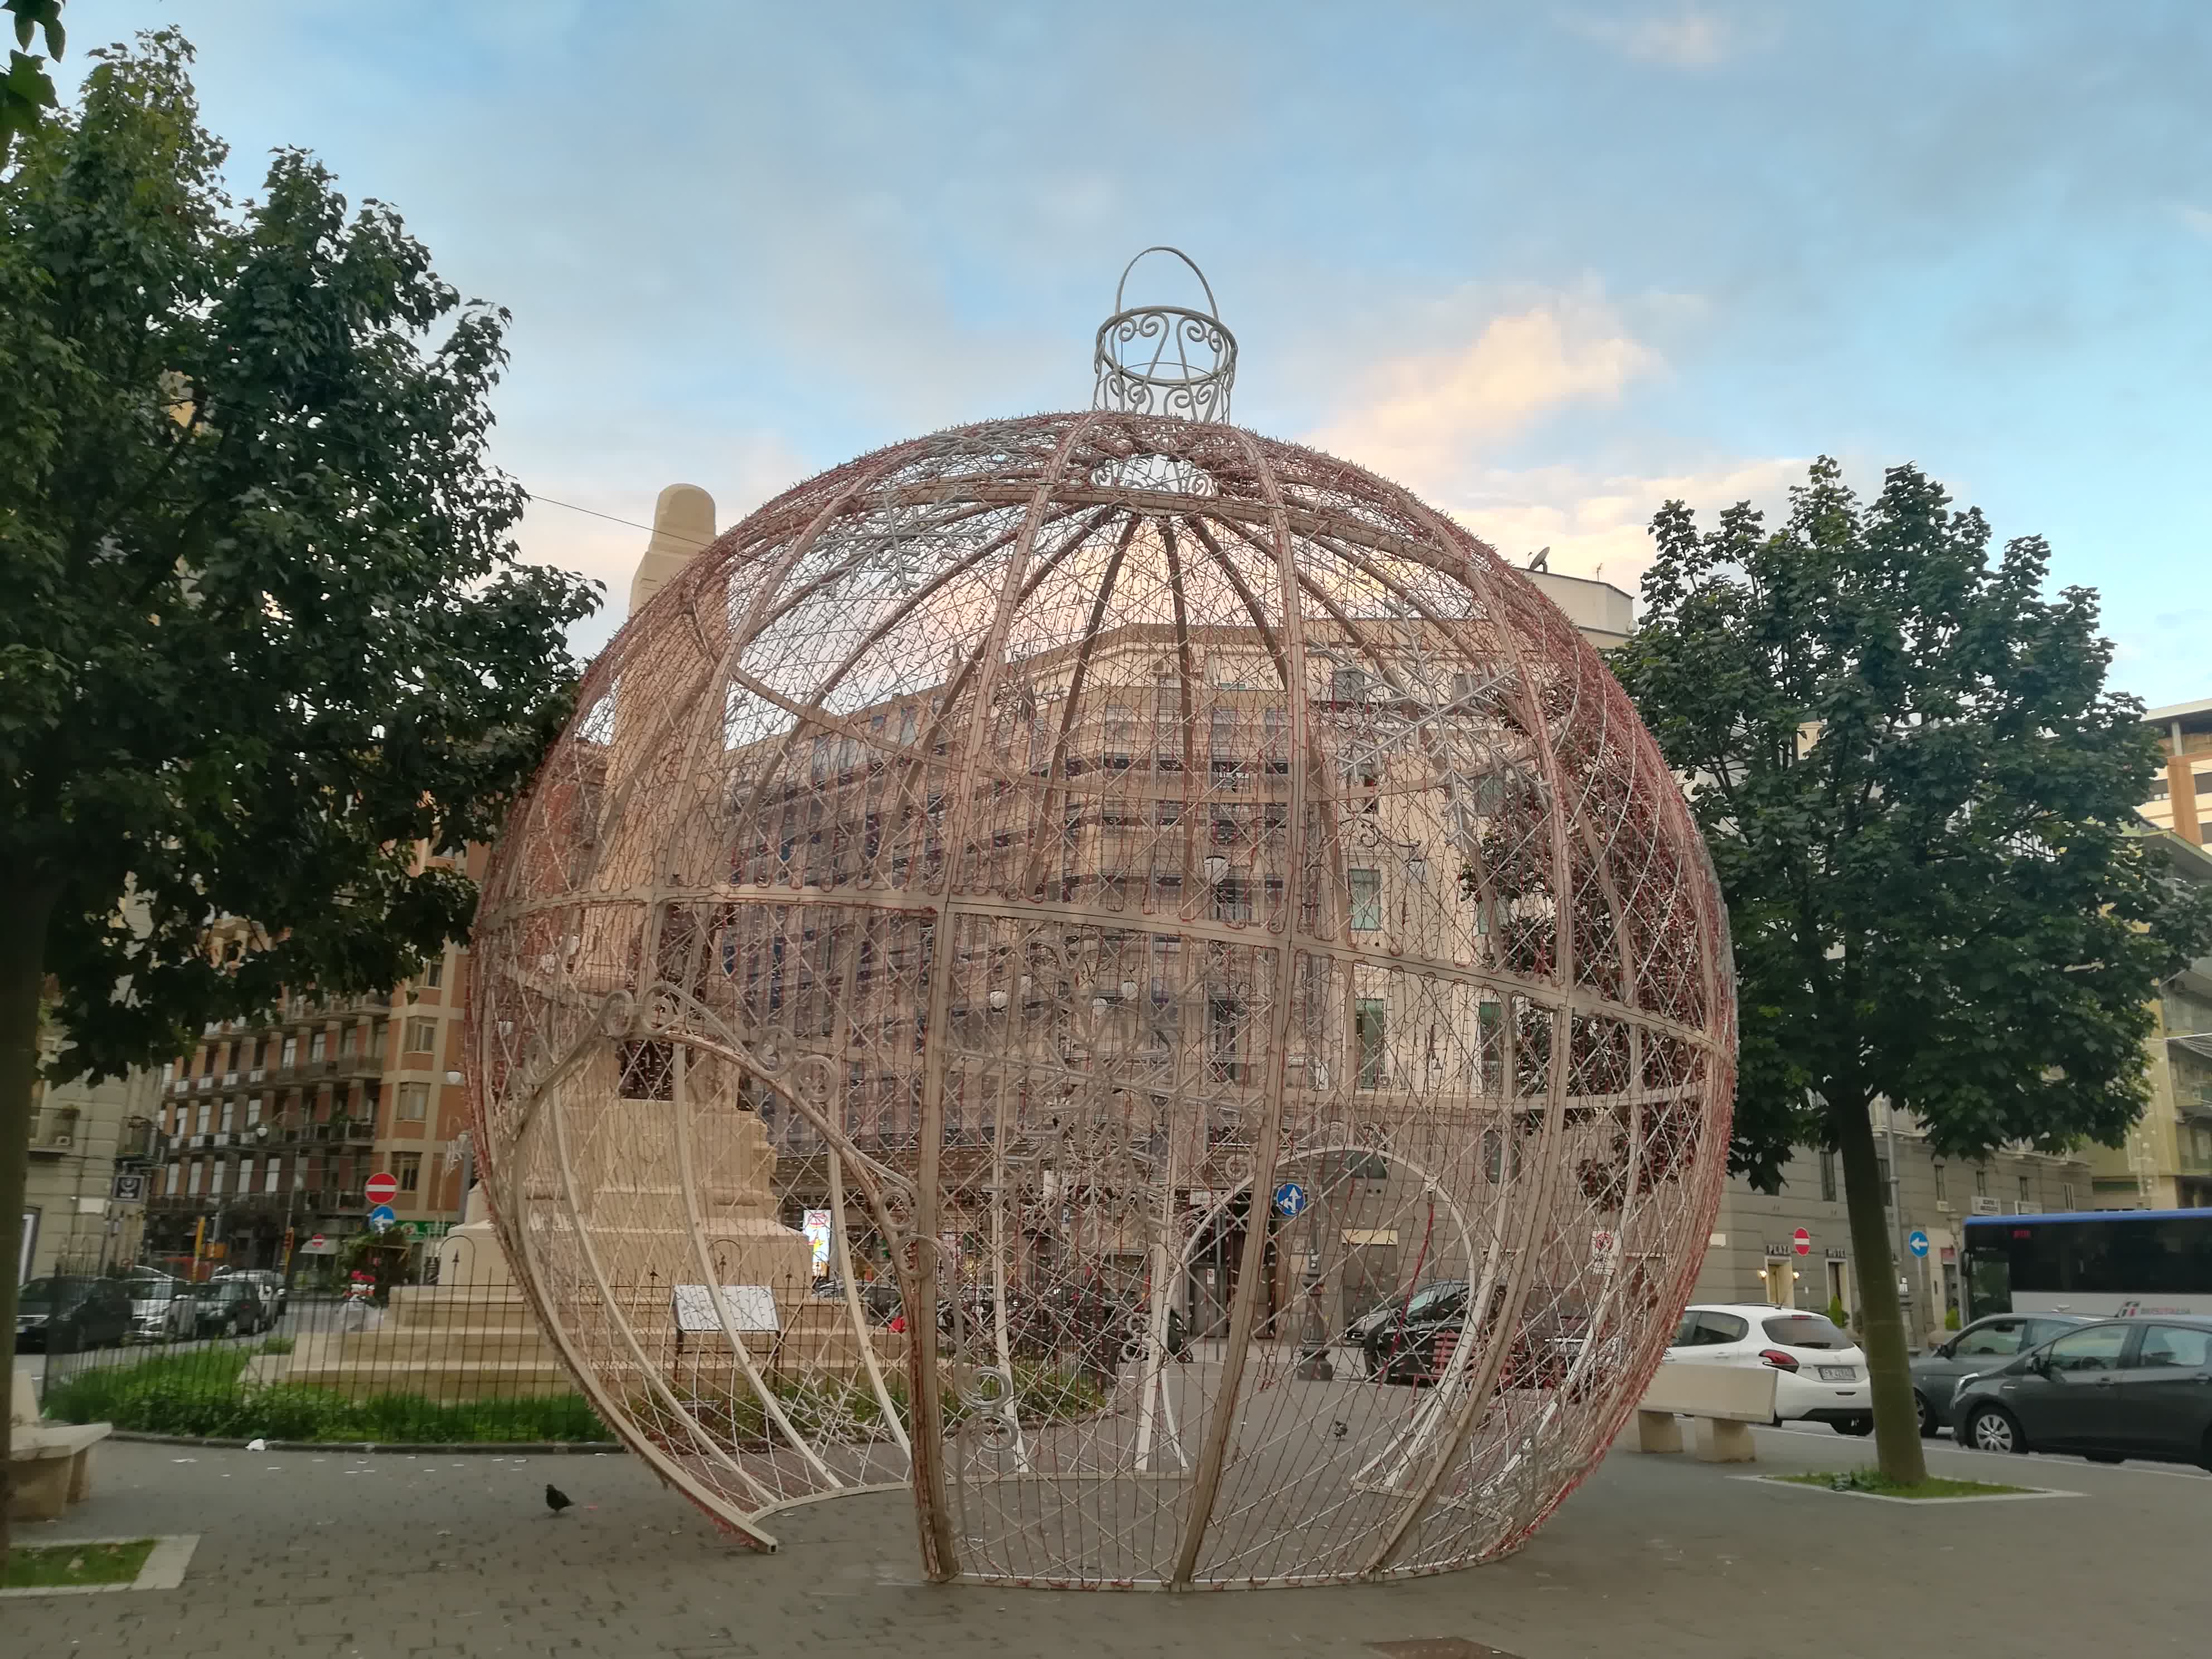 luci-artista-2019-palla-natale-stazione-salerno